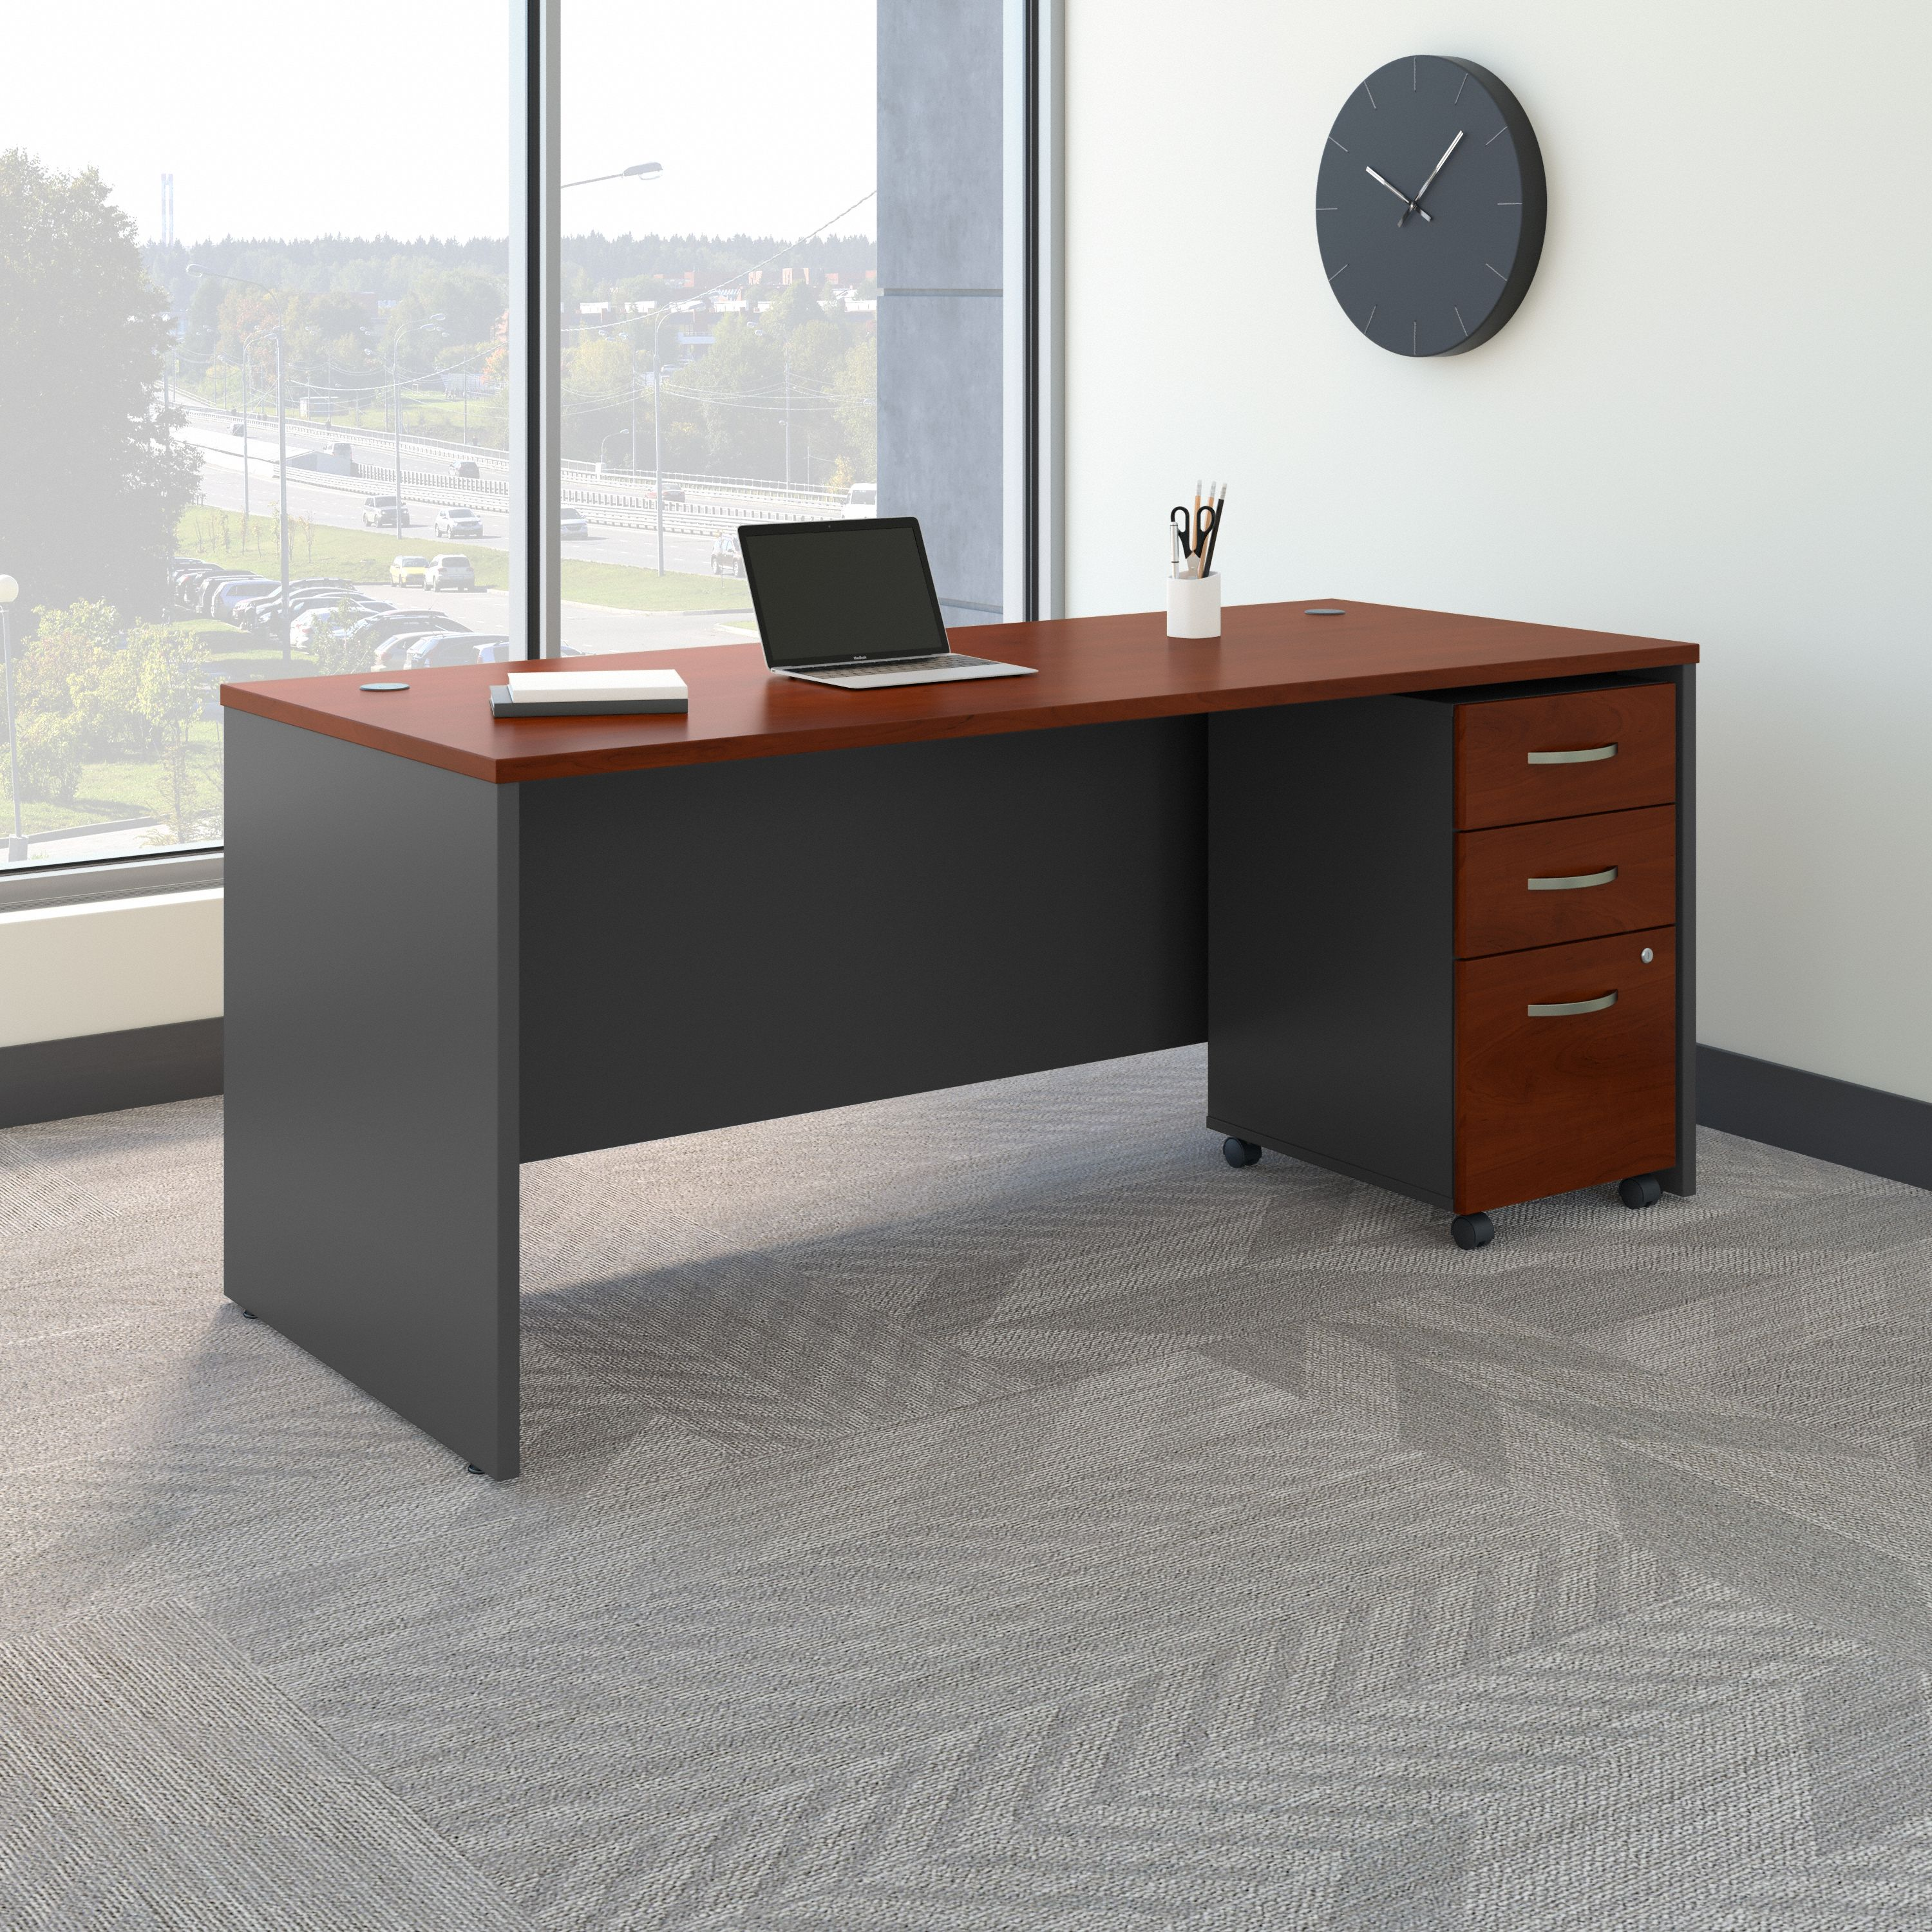 Shop Bush Business Furniture Series C 72W x 30D Office Desk with Mobile File Cabinet 01 SRC113HCSU #color_hansen cherry/graphite gray